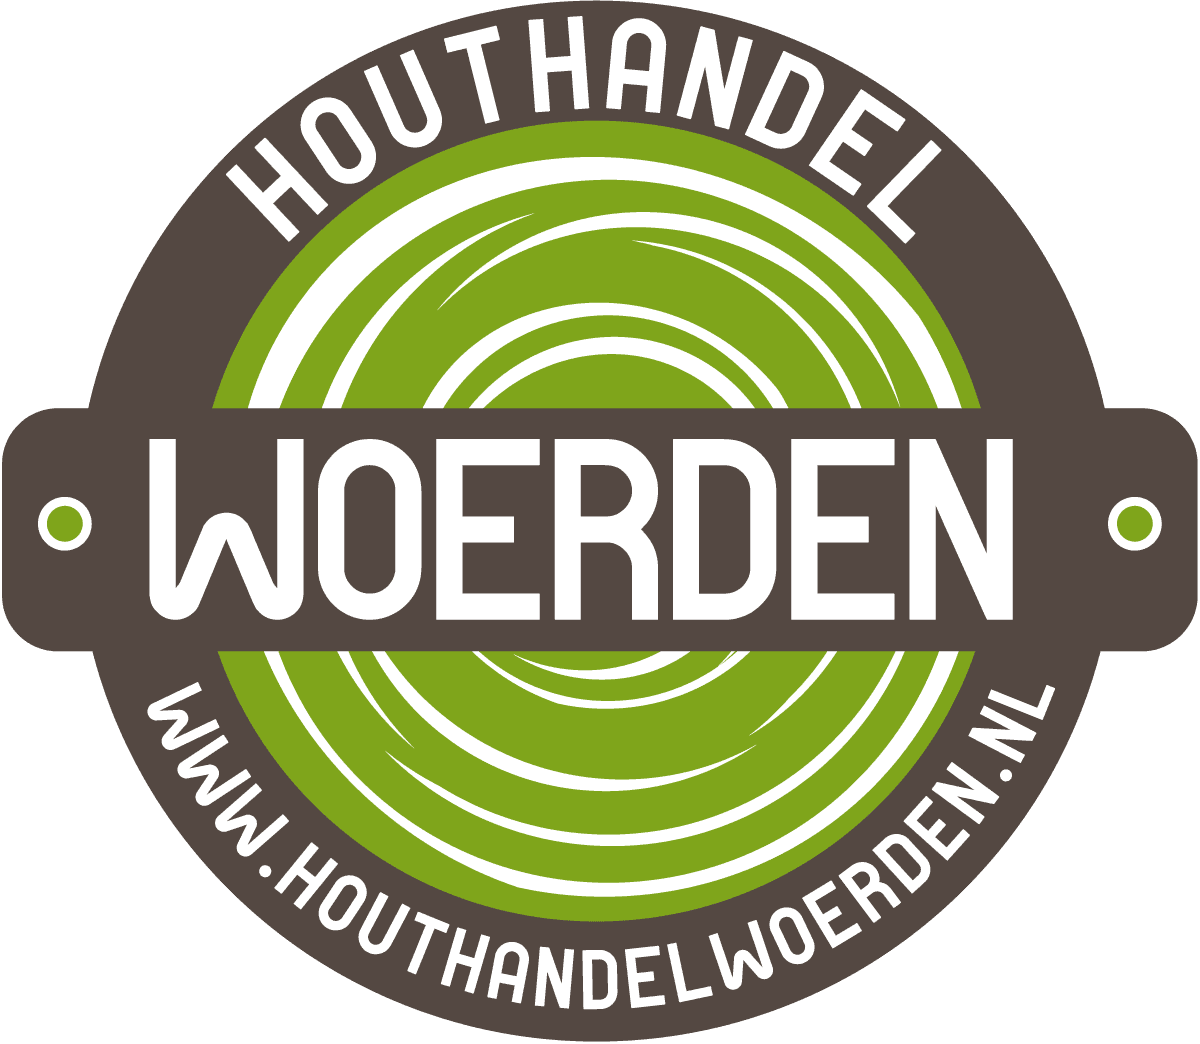 Logo Houthandel Woerden